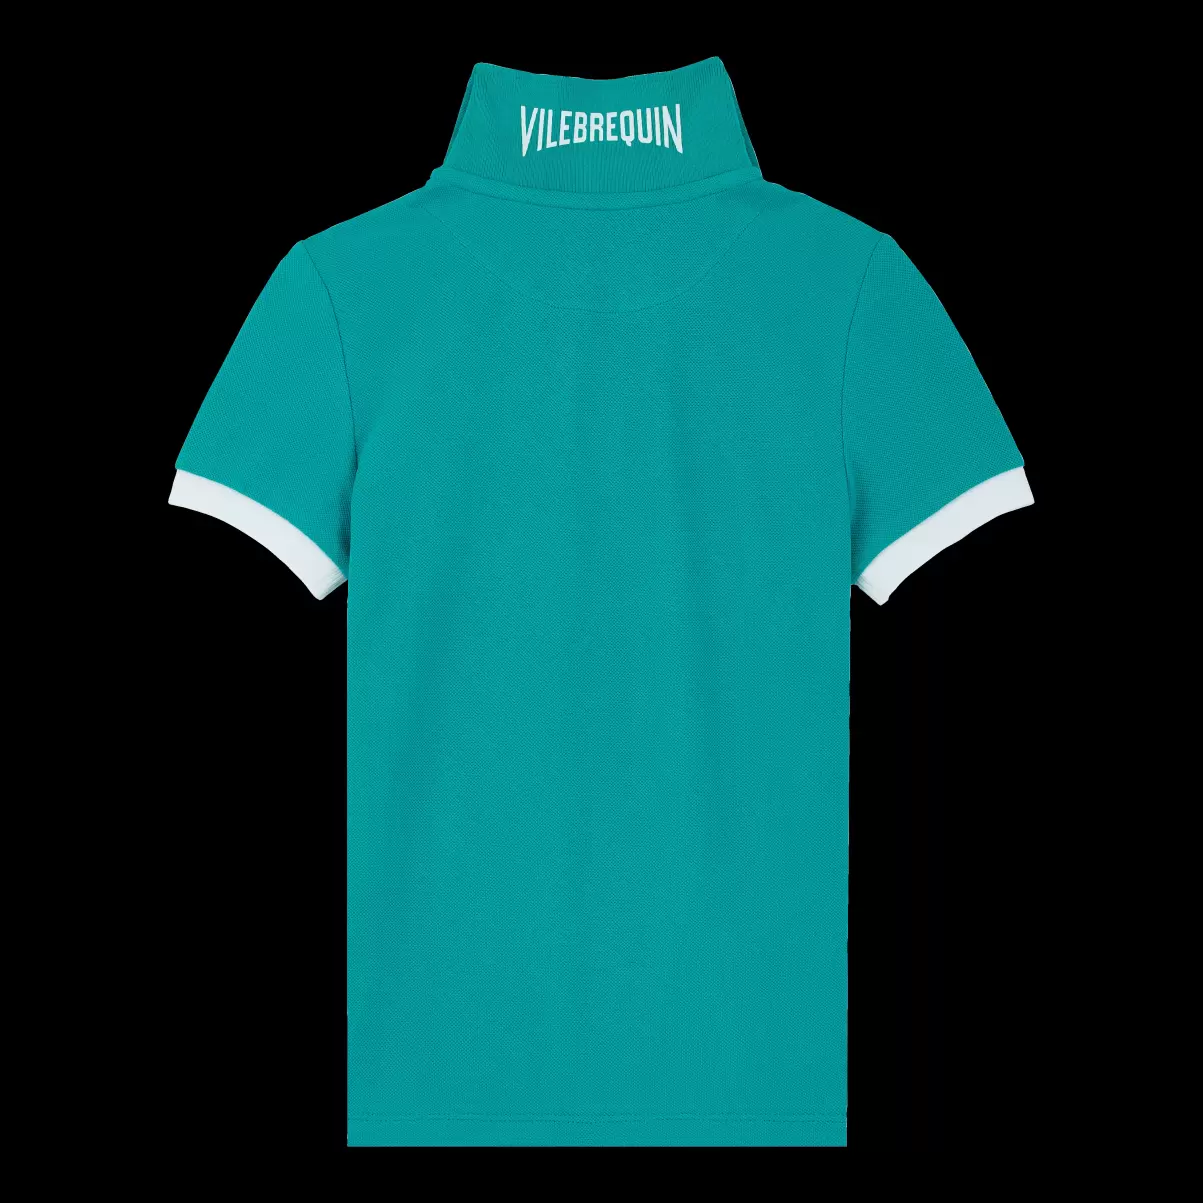 Jungen Tropezian Green / GrÜN Wartungsfreundlich Solid Polohemd Aus Baumwollpikee Für Jungen Vilebrequin Polohemden - 1